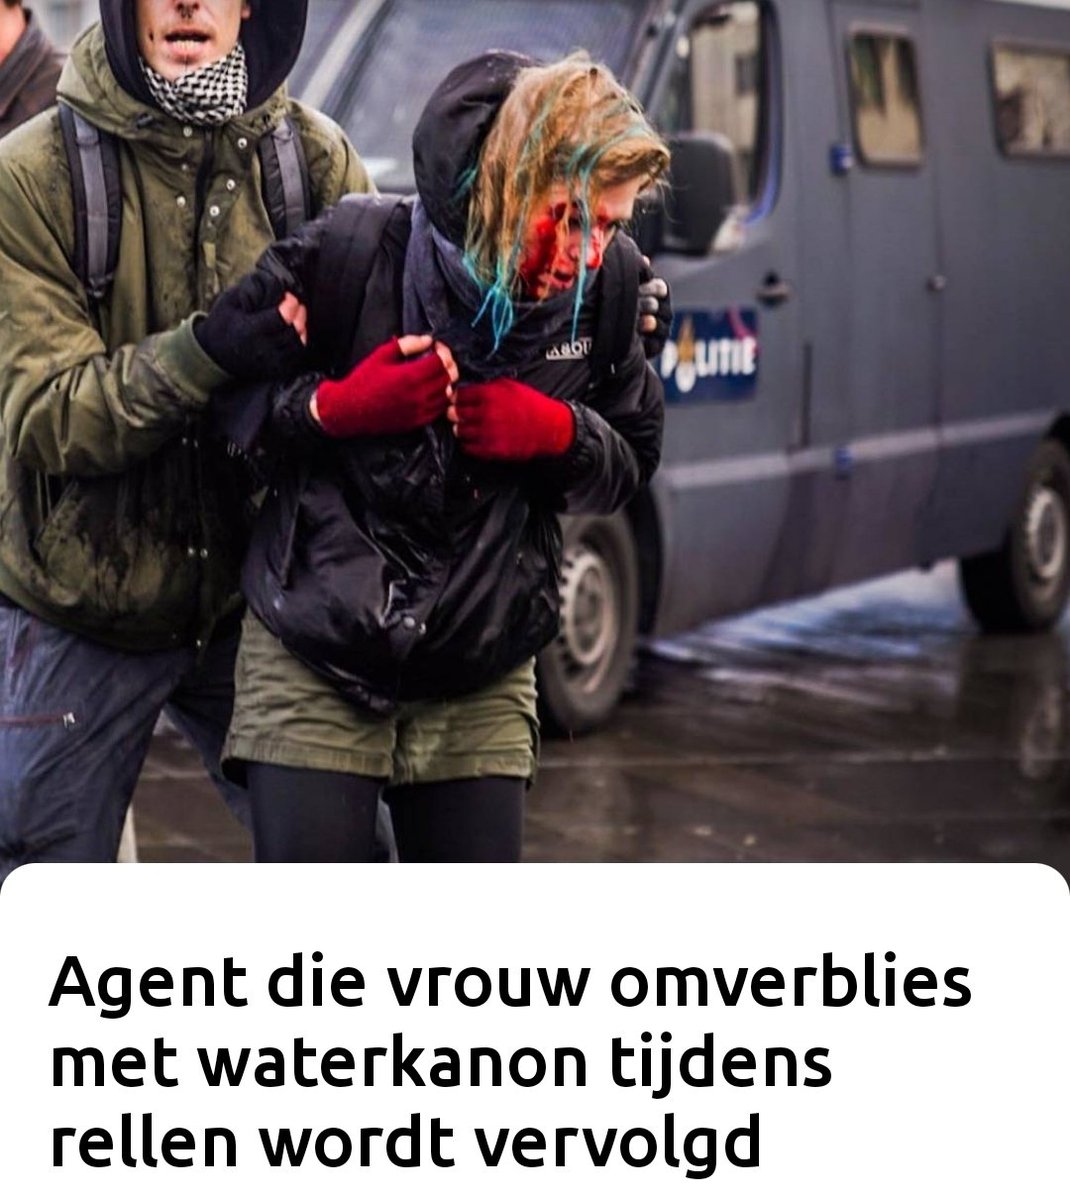 Agente die waterwerper bediende en daarbij een vrouw raakte tijdens de hevige rellen in #Eindhoven, wordt vervolgd. De vrouw raakte ernstig gewond.
omroepbrabant.nl/nieuws/4133681…
#avondklokrellen #Corona #politiewerk